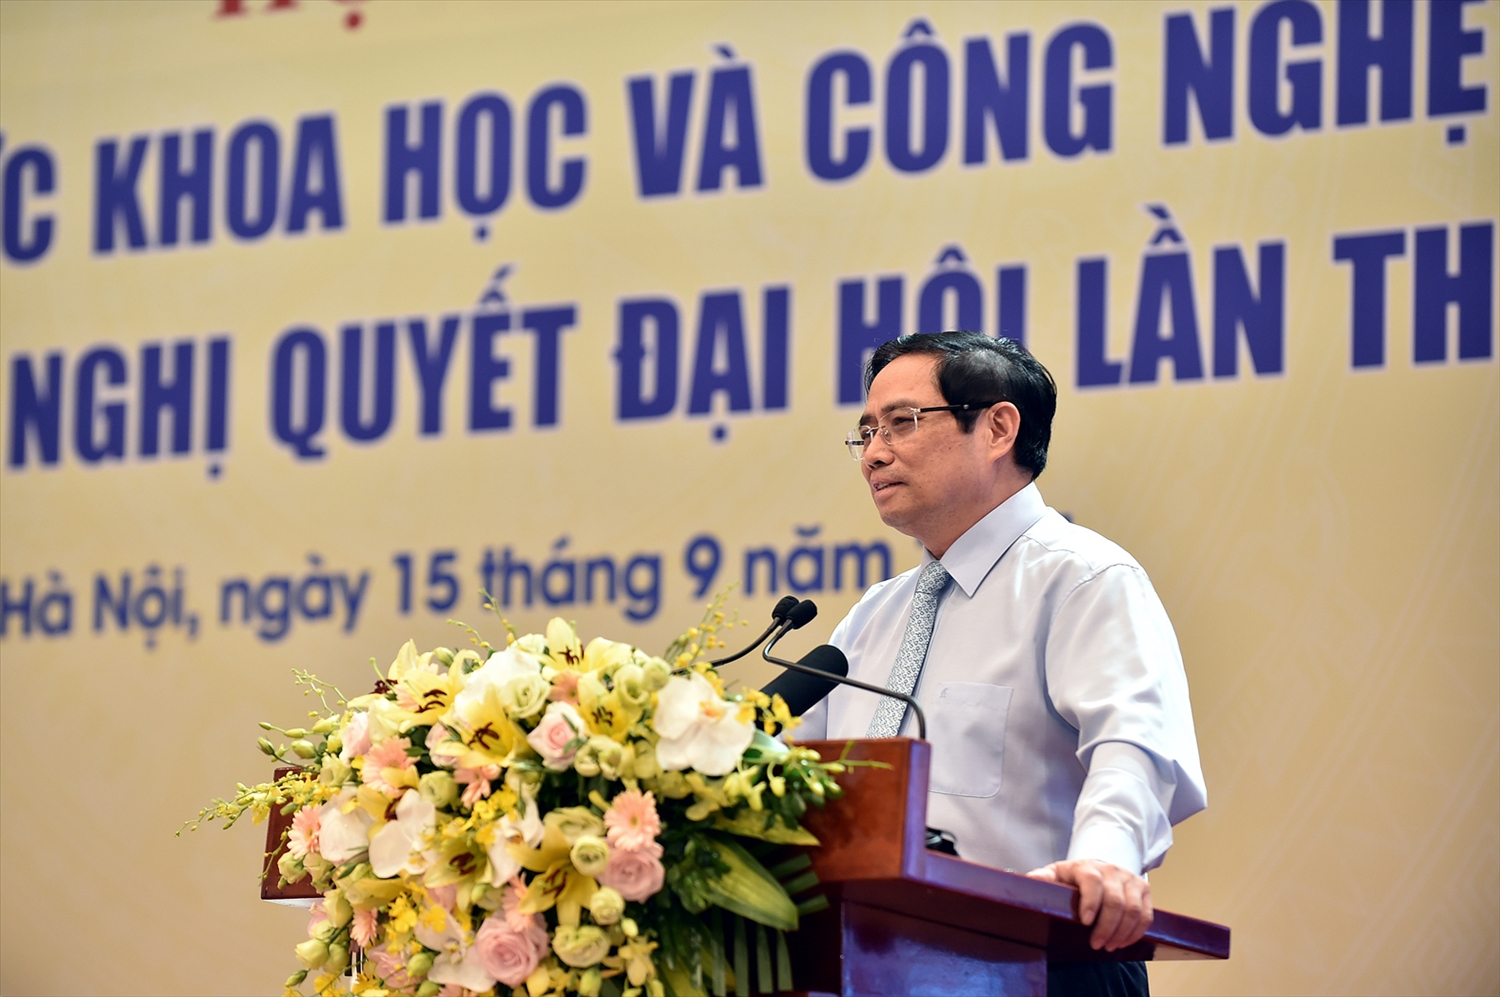 Thủ tướng Phạm Minh Chính: Chúng ta phải có nhận thức mới, tư duy khoa học mới gắn với những giải pháp thiết thực, hiệu quả để đưa chủ trương, đường lối của Đảng vào thực tiễn đời sống - Ảnh: VGP/Nhật Bắc